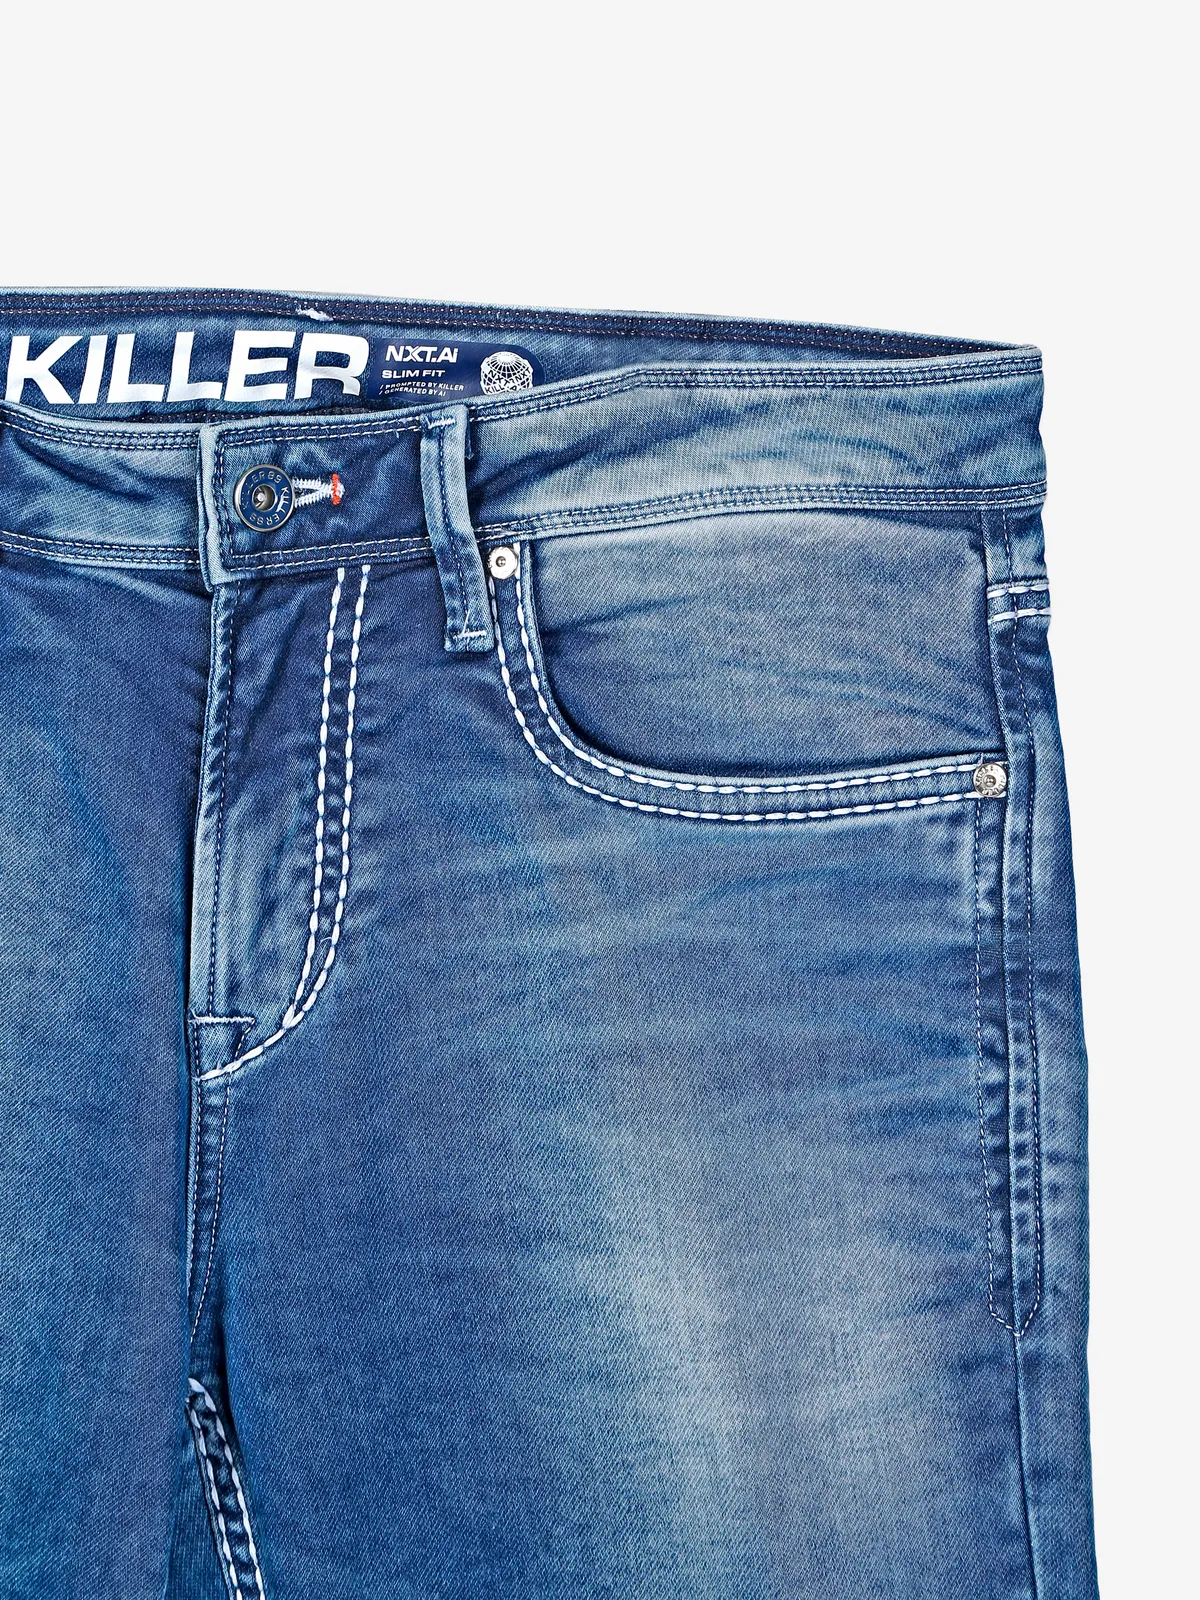 Killer slim fit blue jeans